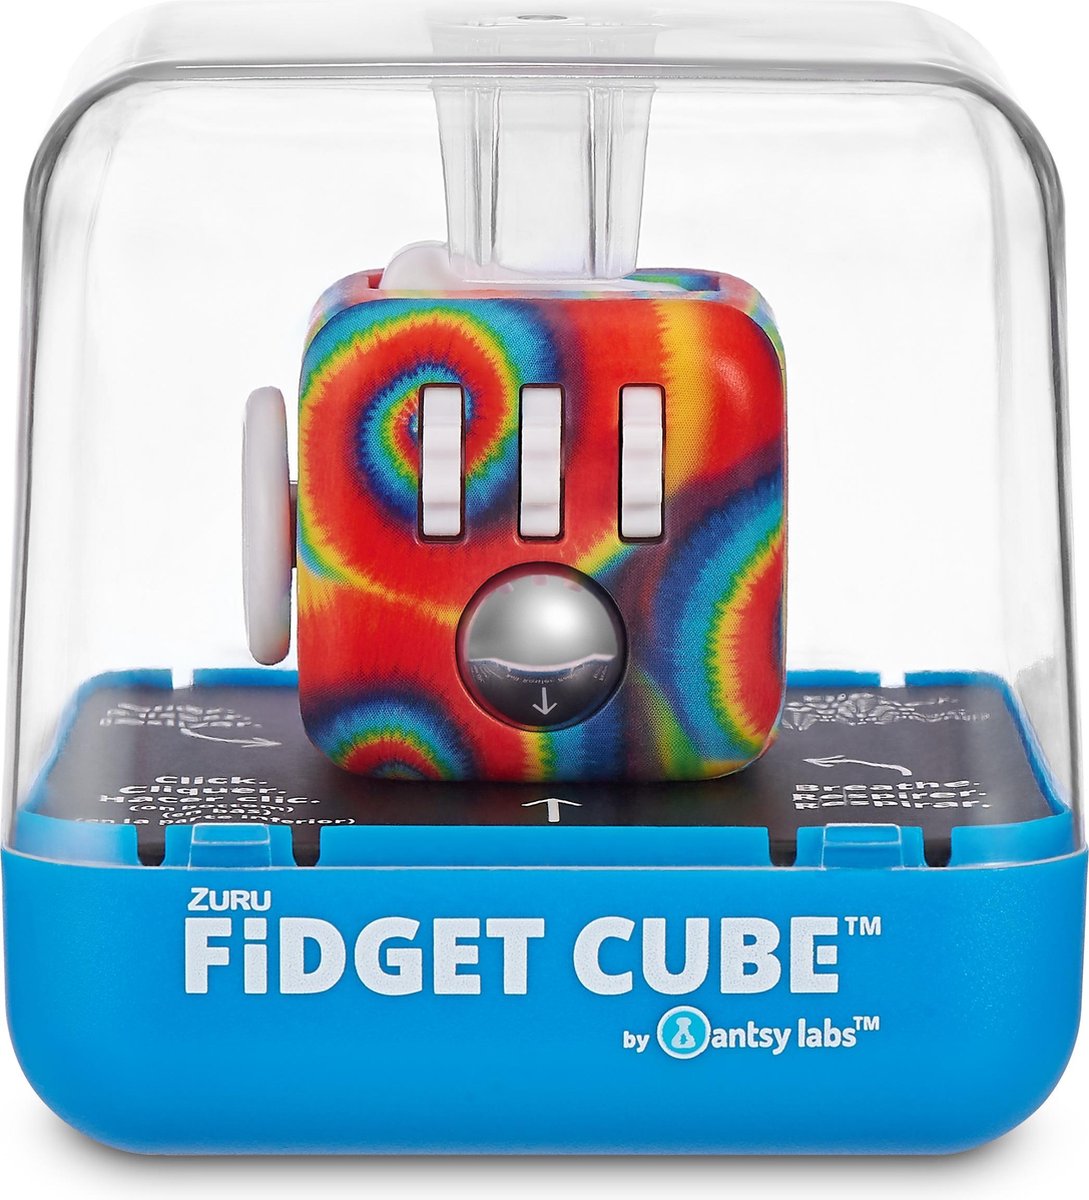 Fidget Cube pas cher : dé anti-stress, améliorer sa concentration